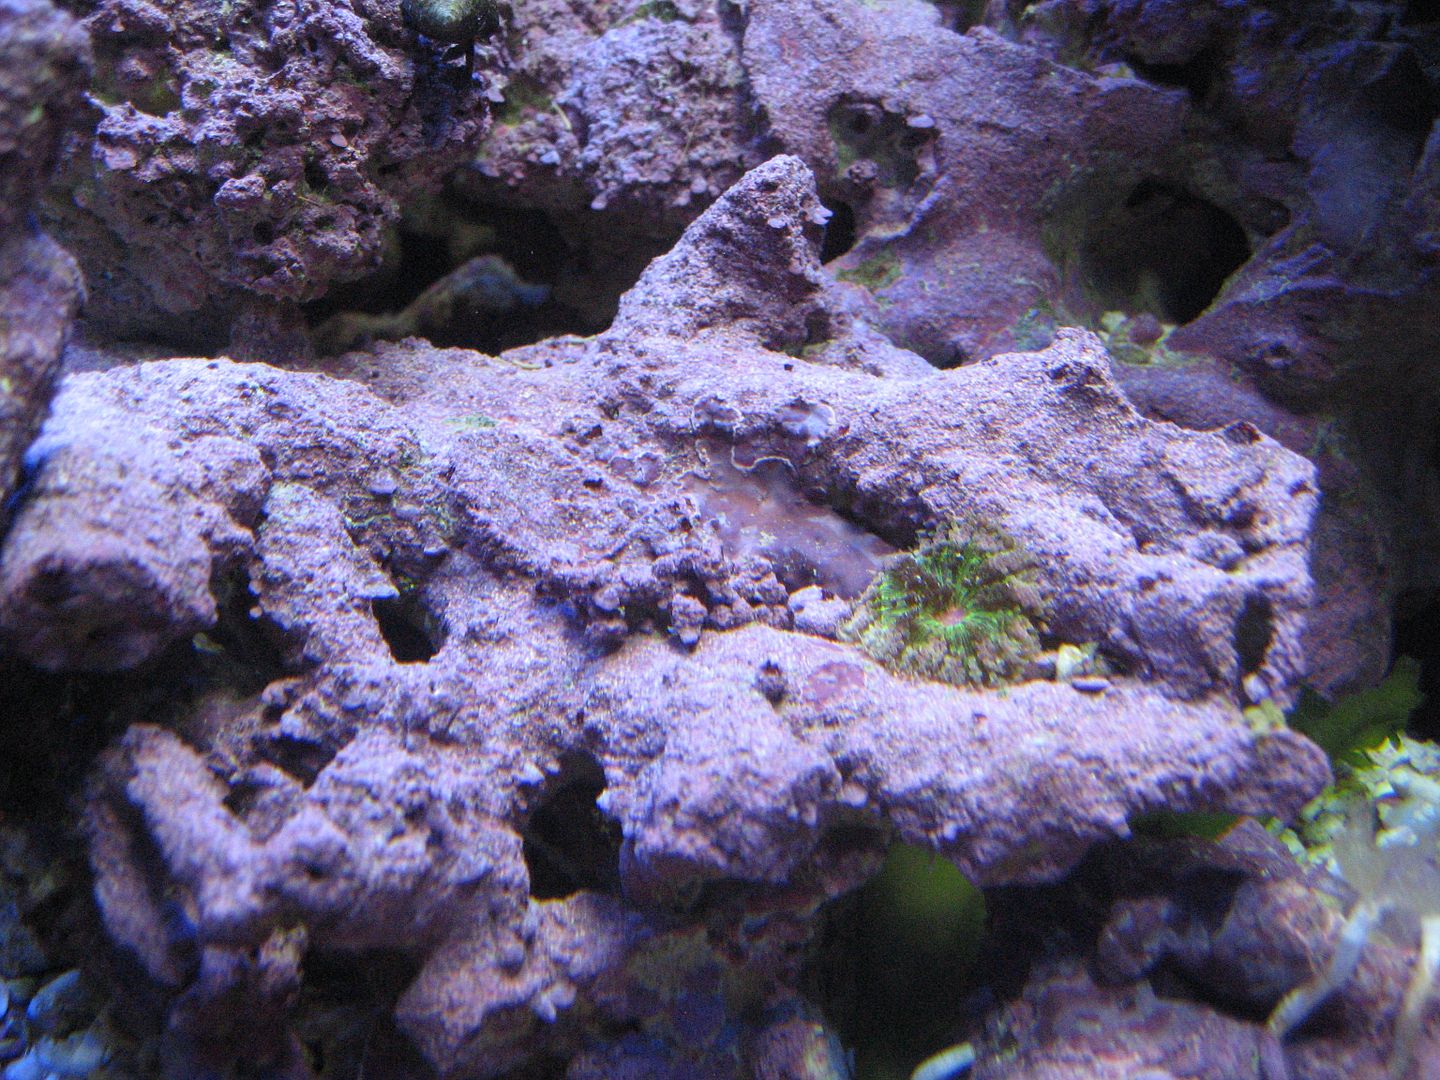 Aquarium_LoneMMCA_16APR2012-1.jpg